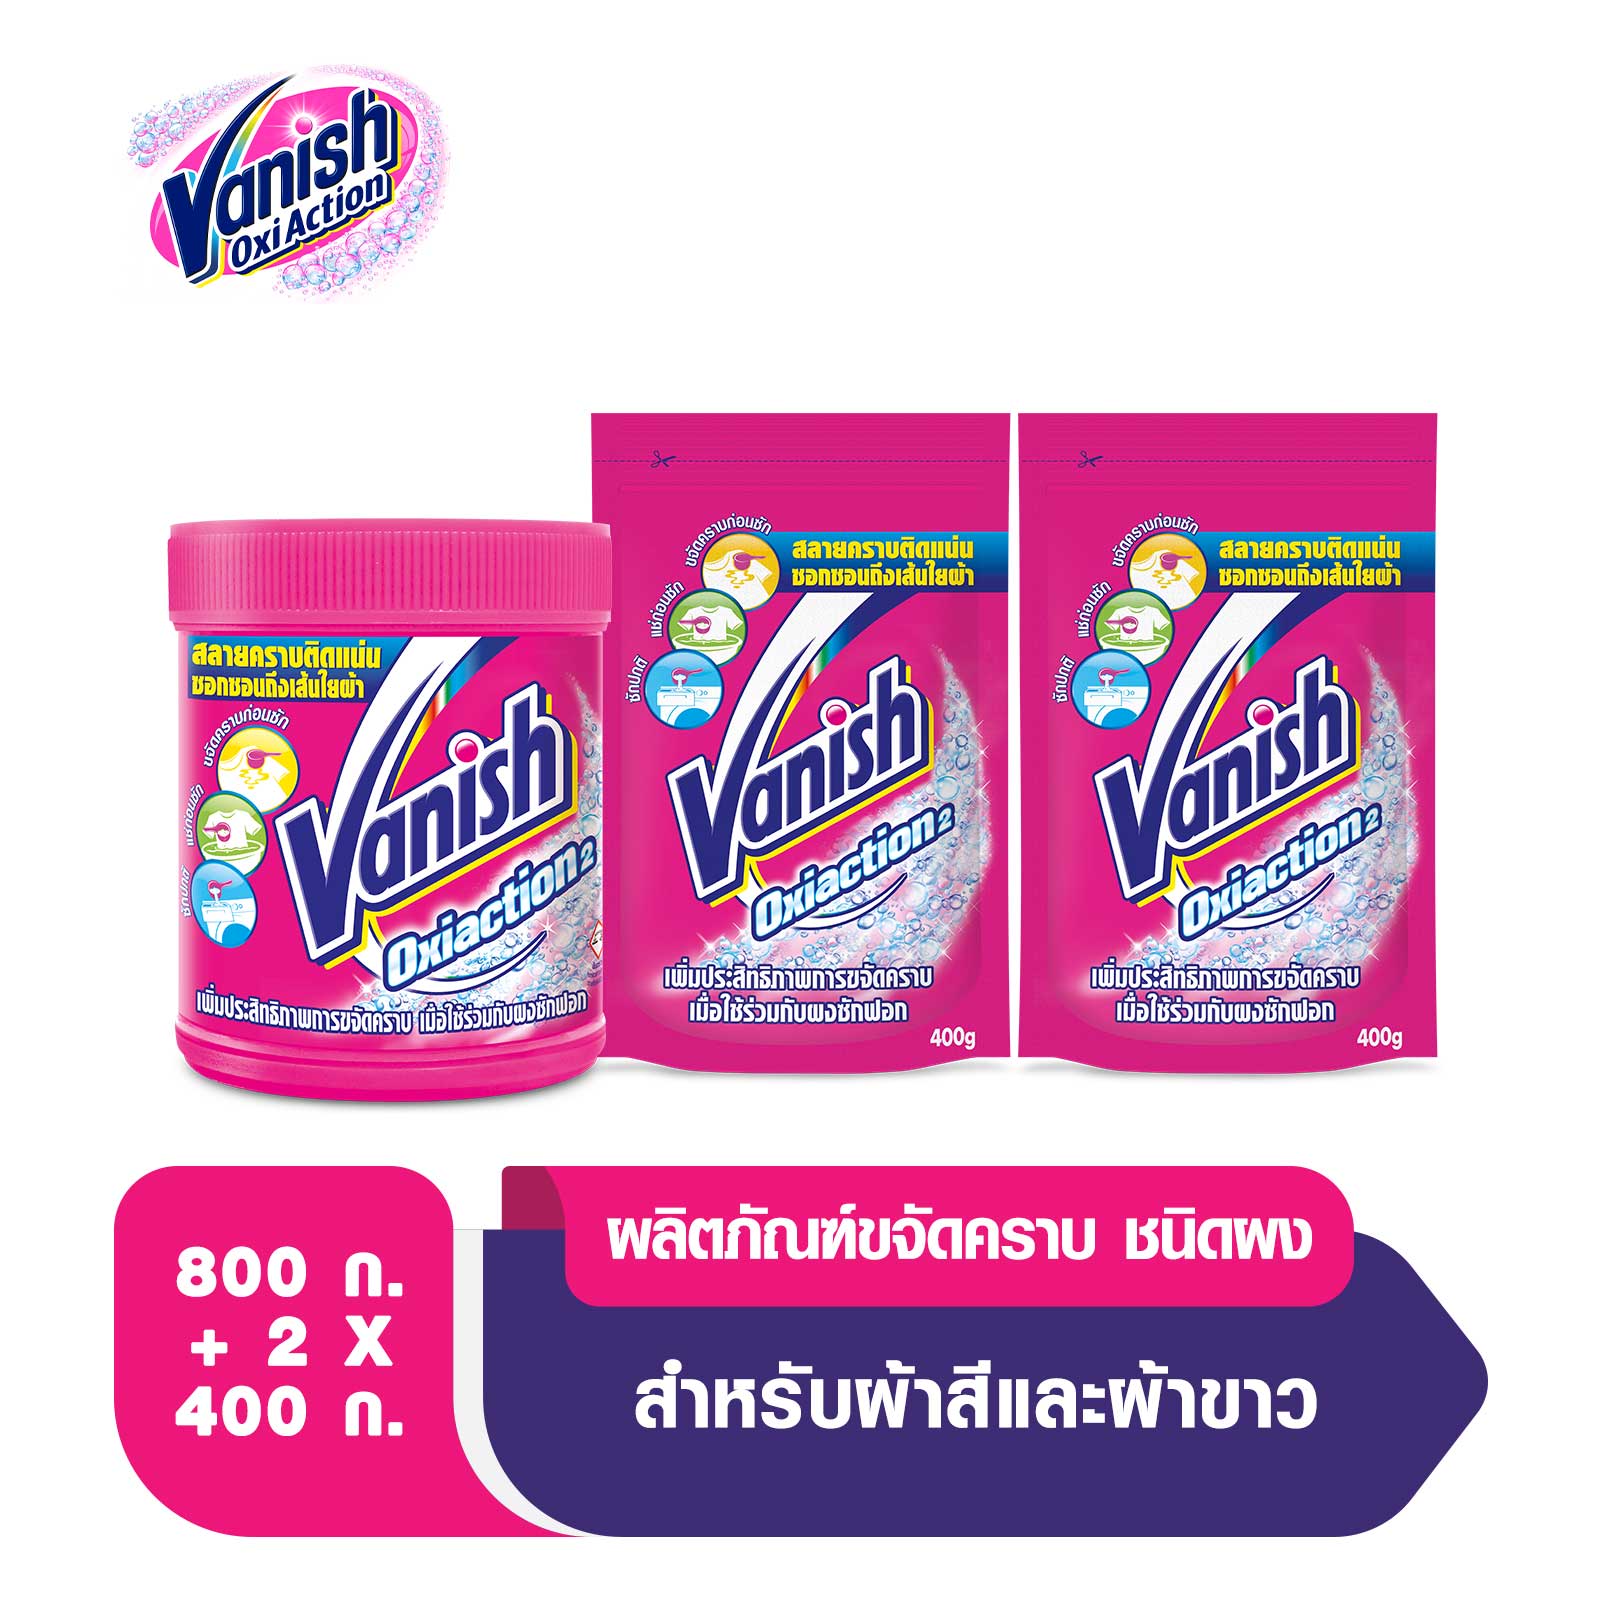 Vanish [แพ็คถุงเติม] แวนิช ผลิตภัณฑ์ขจัดคราบอเนกประสงค์ สำหรับผ้าขาวและผ้าสี ขนาด 800 กรัม + ถุงเติม 400 กรัม แพ็คคู่